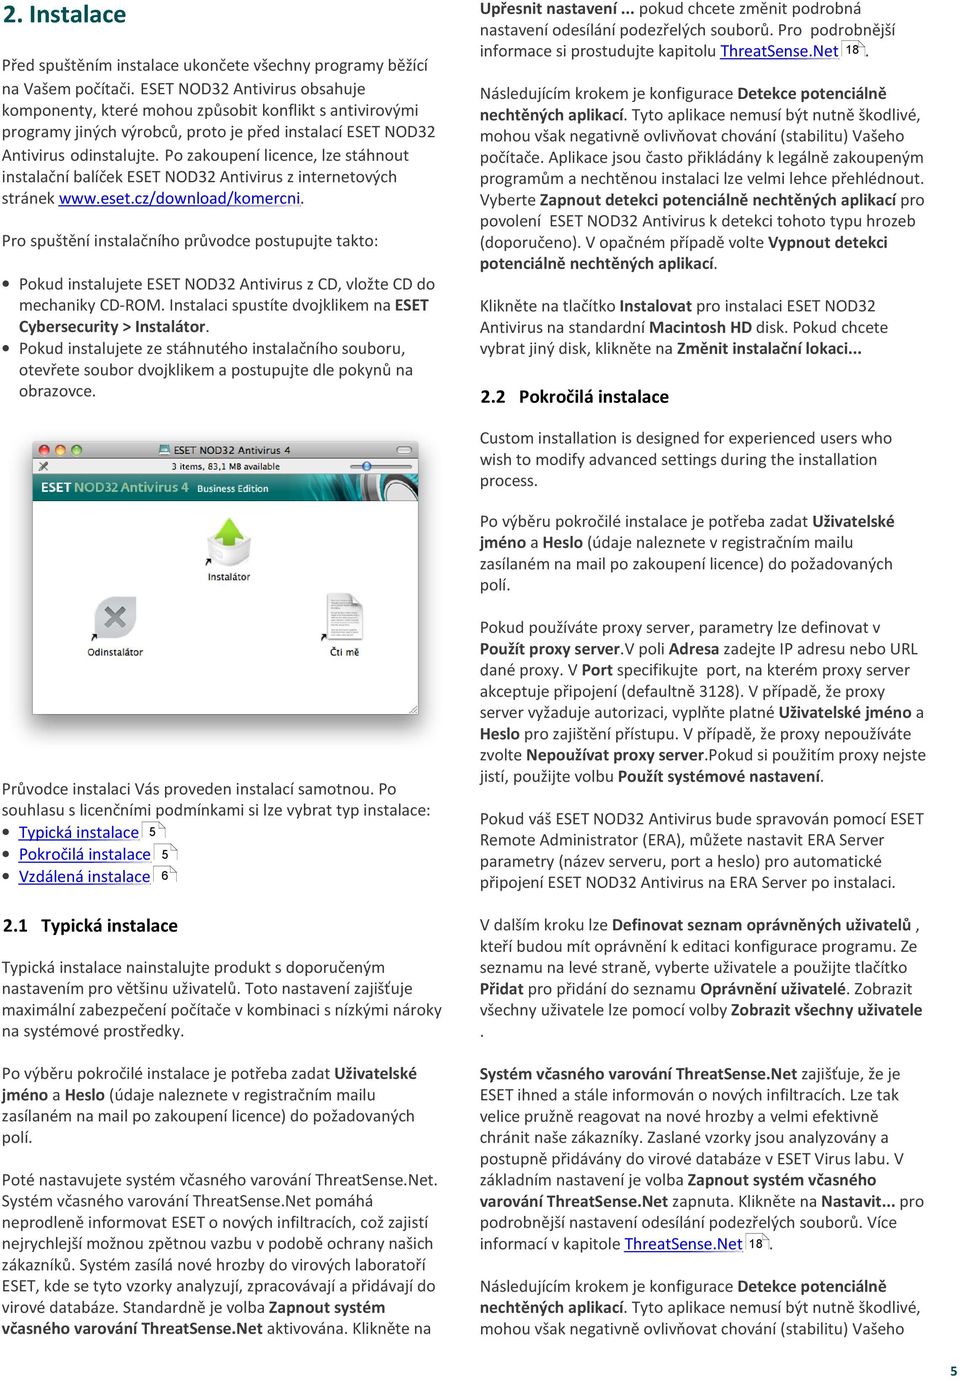 Po zakoupení licence, lze stáhnout instalační balíček ESET NOD32 Antivirus z internetových stránek www.eset.cz/download/komercni.